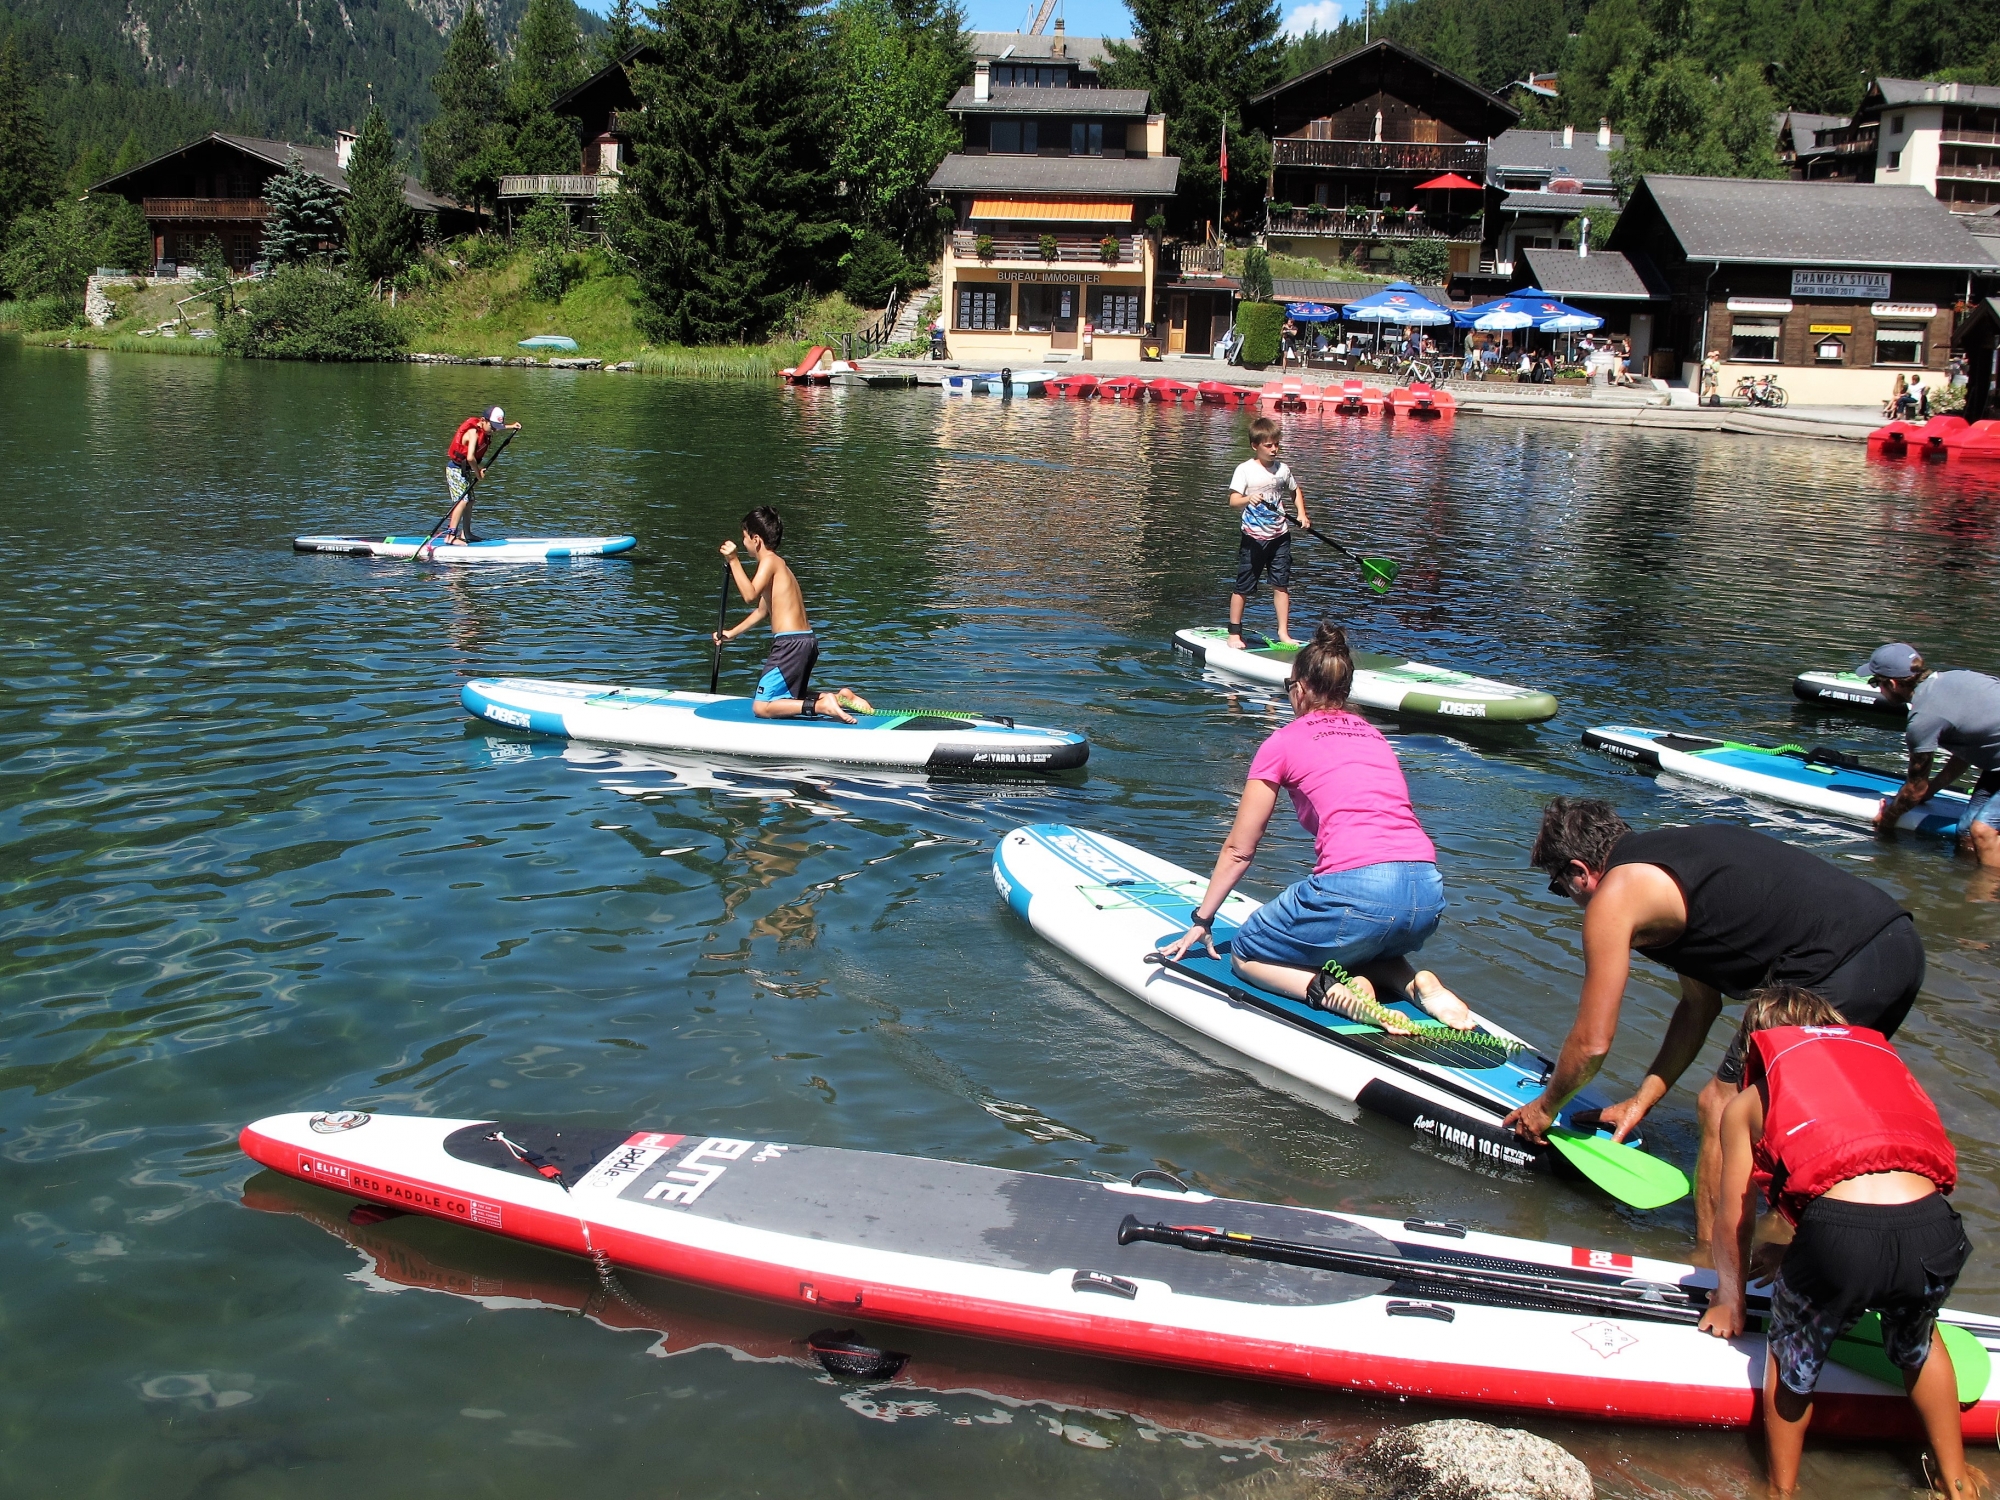 Activité comprise dans le PASS Saint-Bernard, le paddle sur le lac de Champex a littéralement cartonné durant l'été 2017.